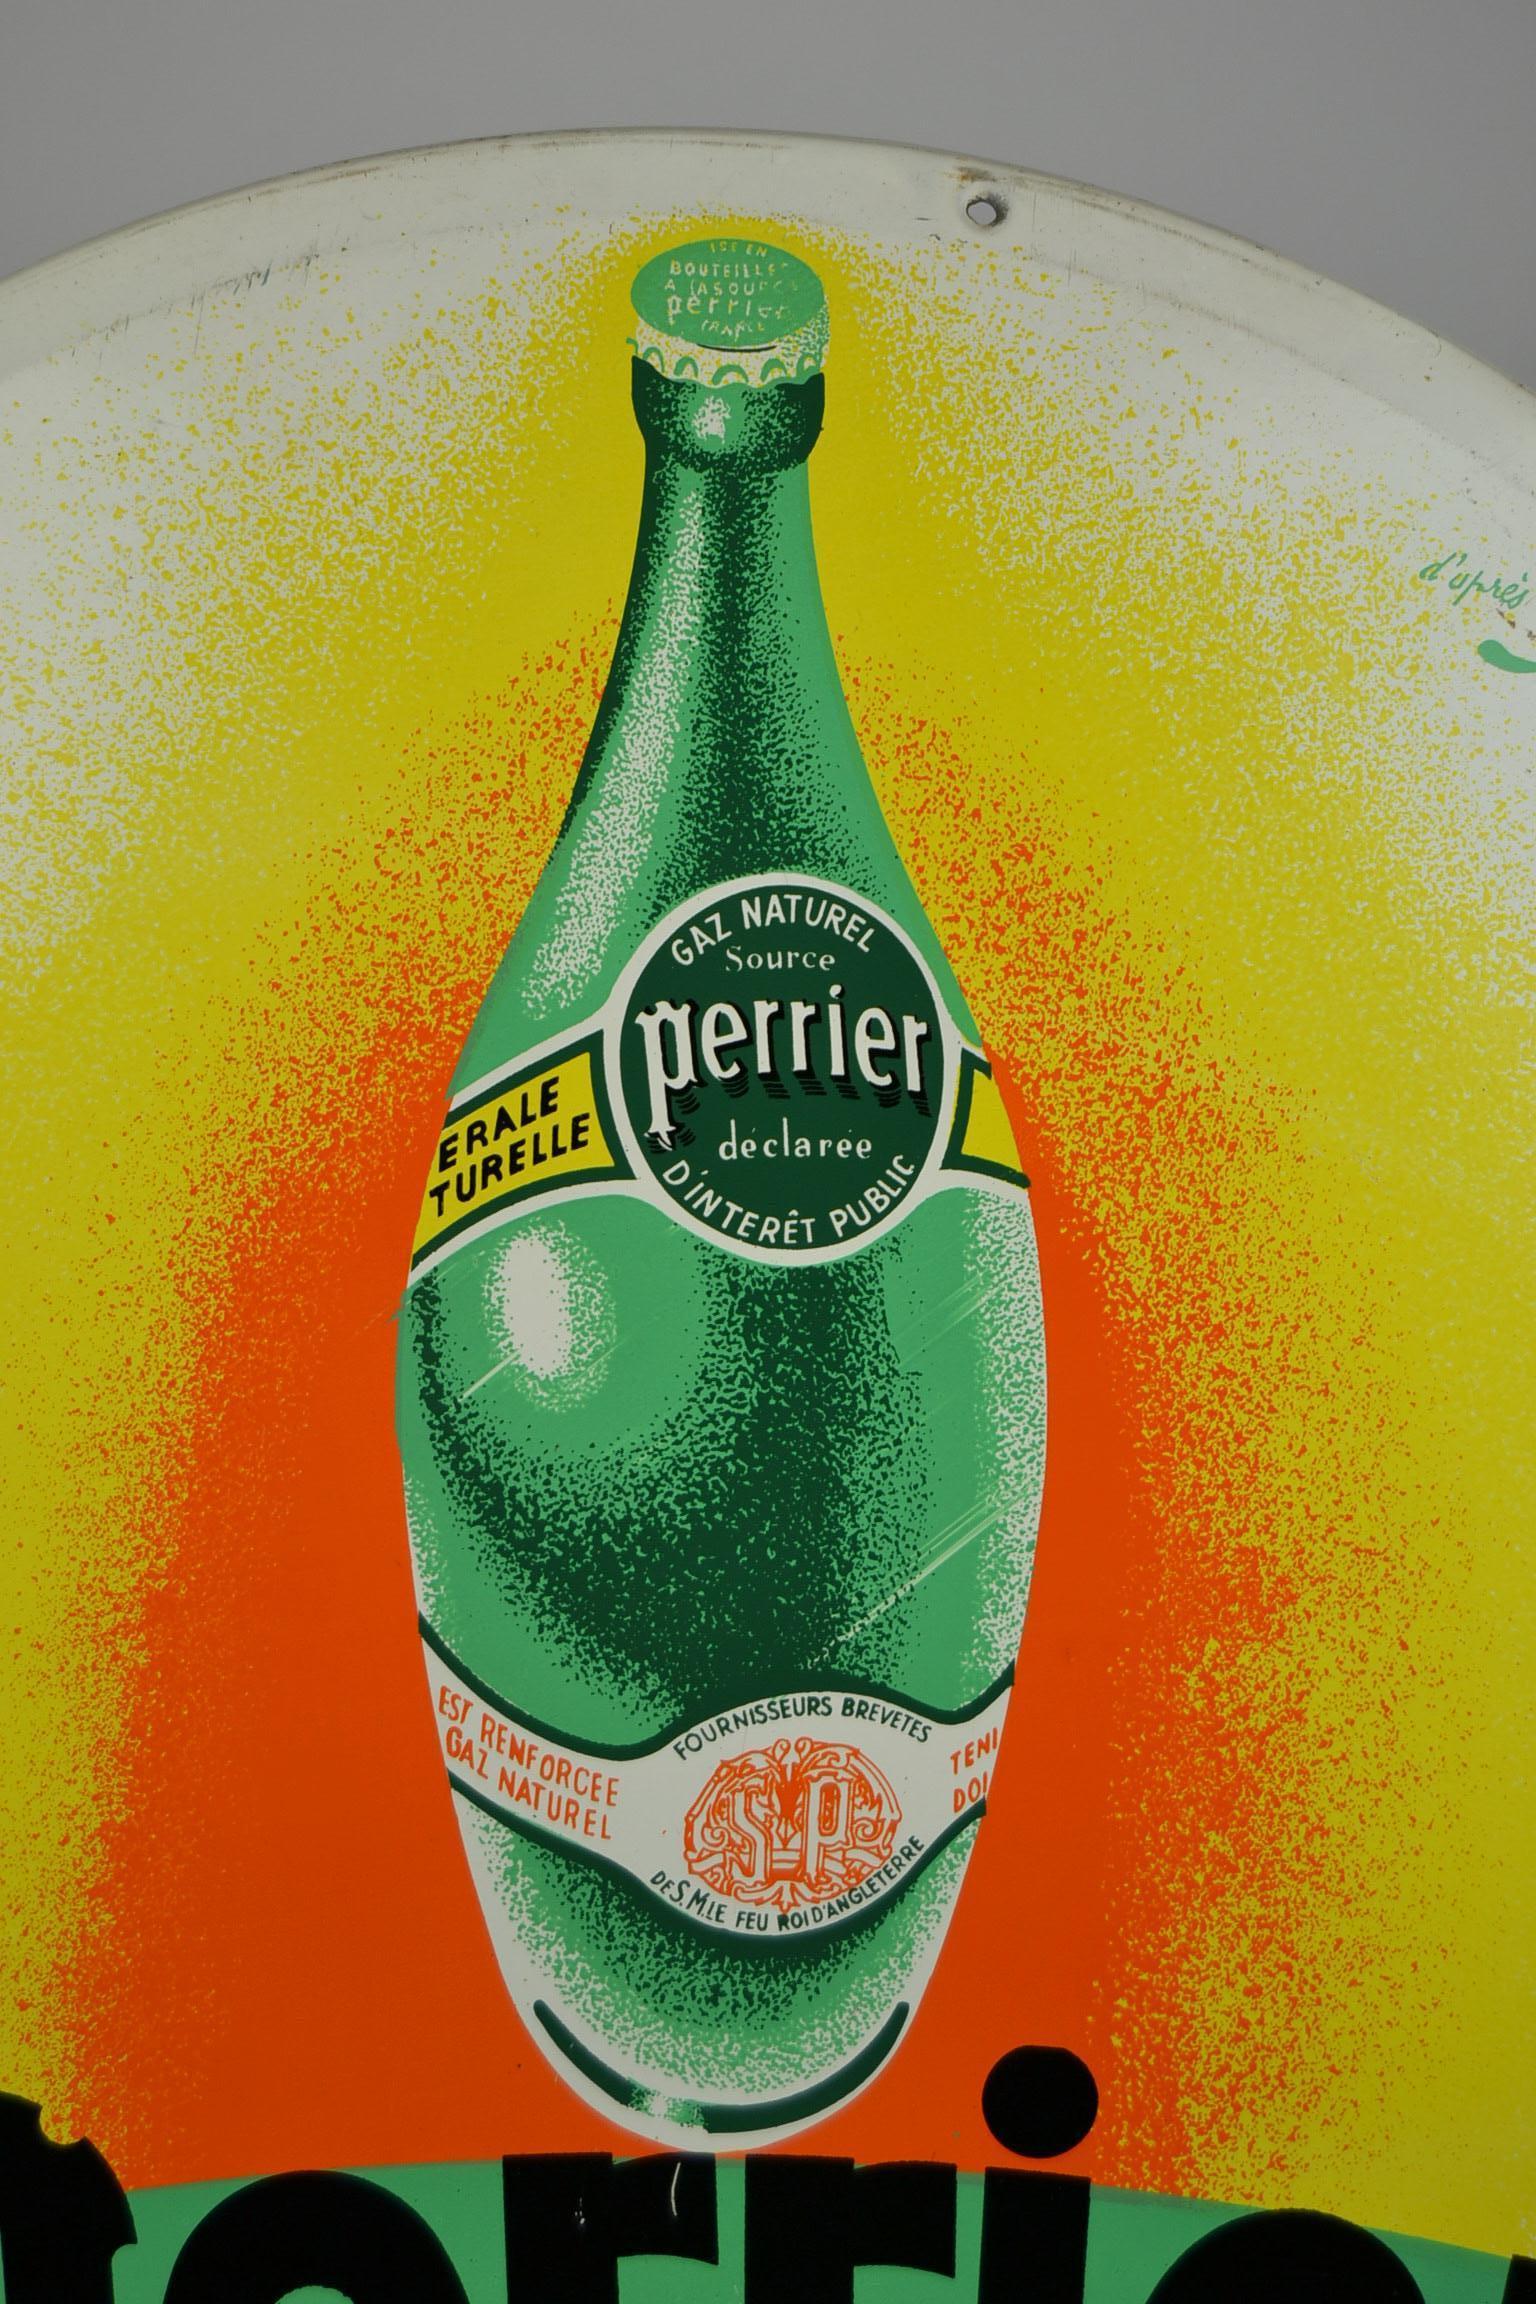 Tolles rundes Werbeschild aus Metall für Perrier::
das berühmte Sprudelwasser in der grünen Flasche - Eau de gazeuse minérale naturelle. 
Es hat schöne Farben wie grün:: gelb:: orange und schwarz und passt zu jeder Art von Interieur. 
Diese